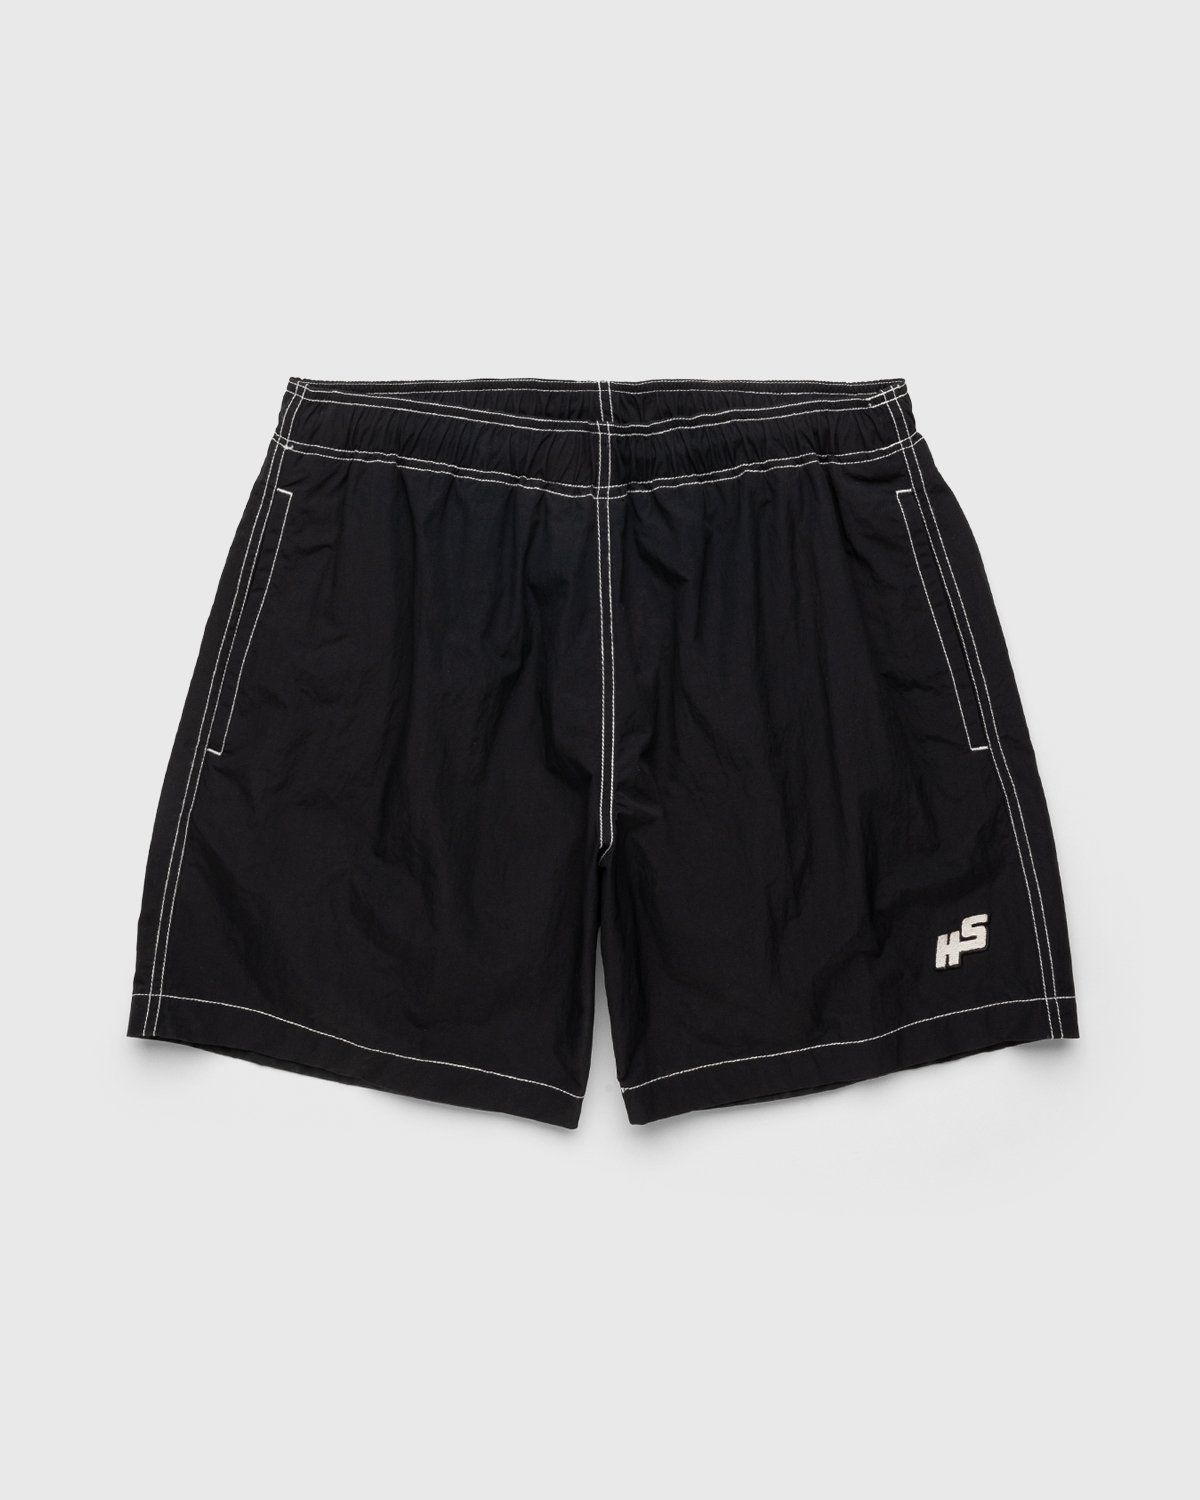 Highsnobiety – Contrast Brushed Nylon Water Shorts Black - Shorts - Black - Image 1